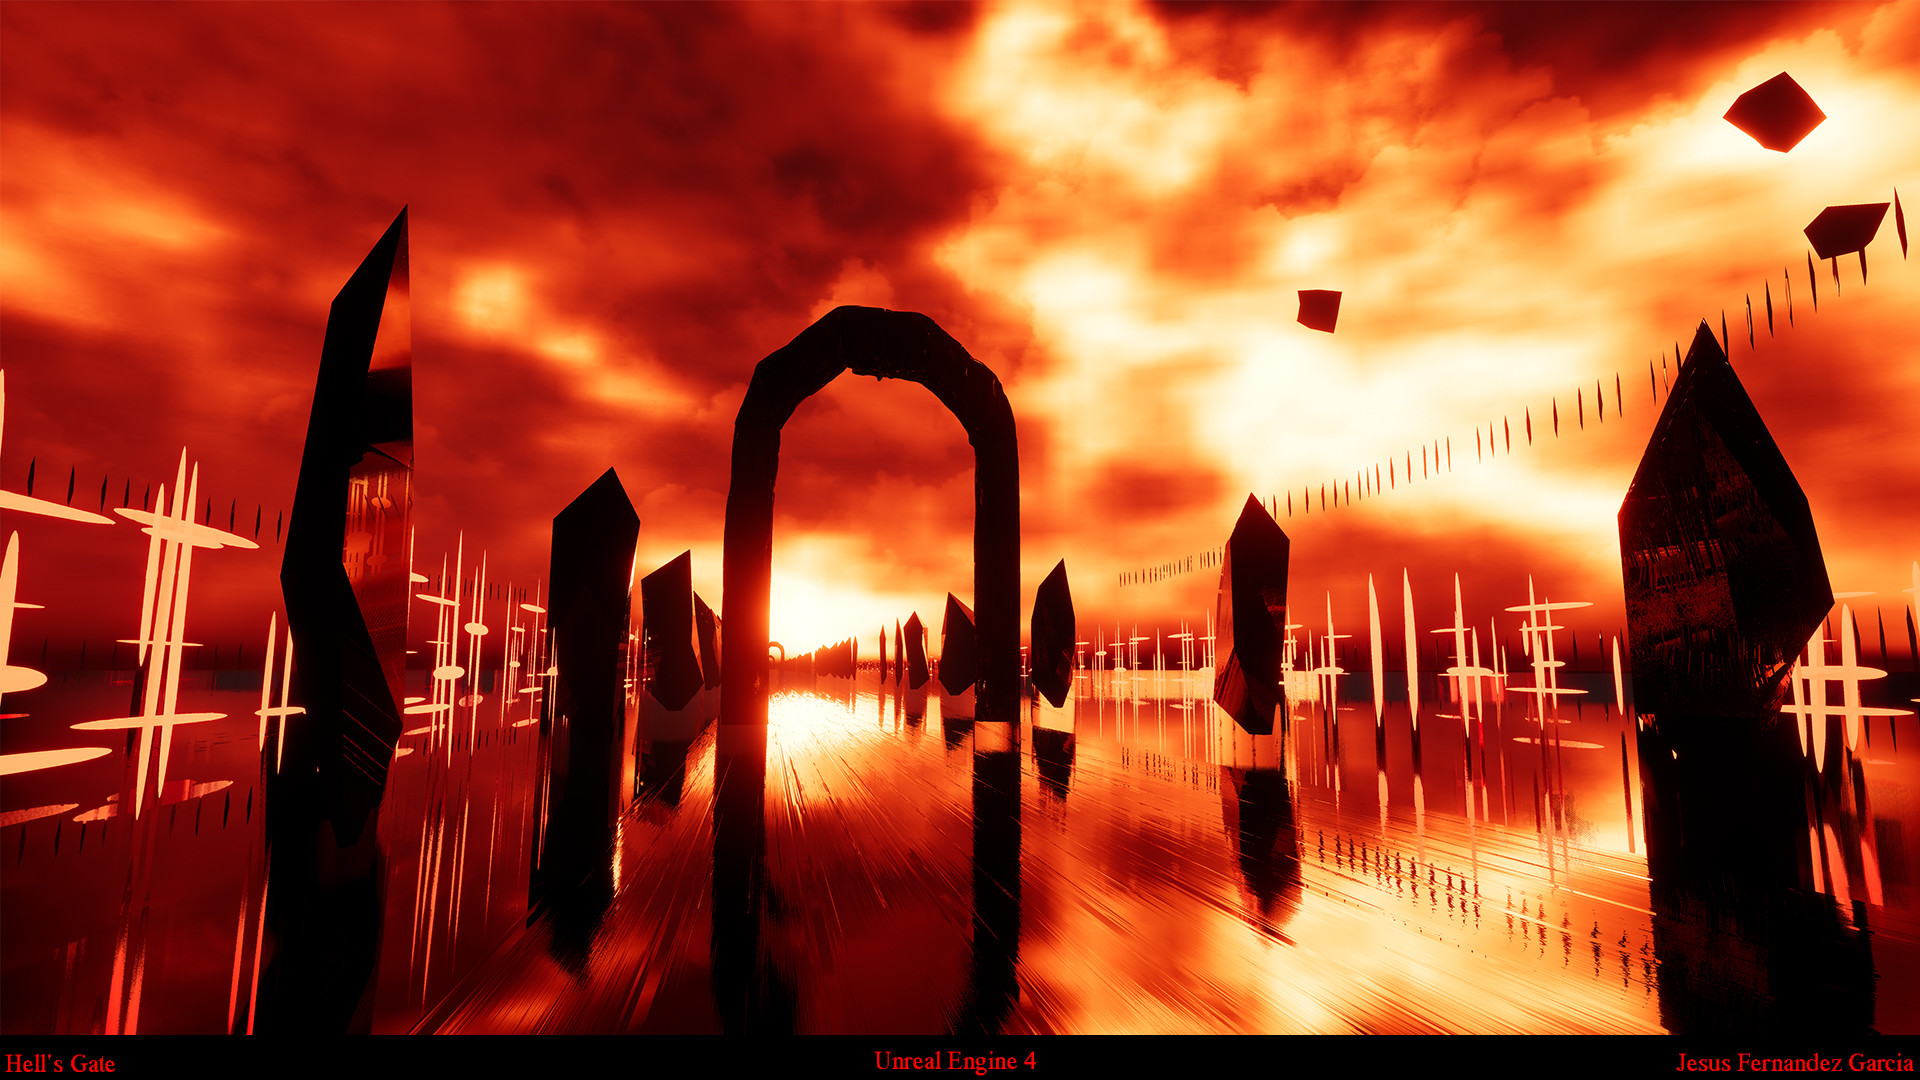 Hell’s Gate by Jesus Fernandez Garcia.